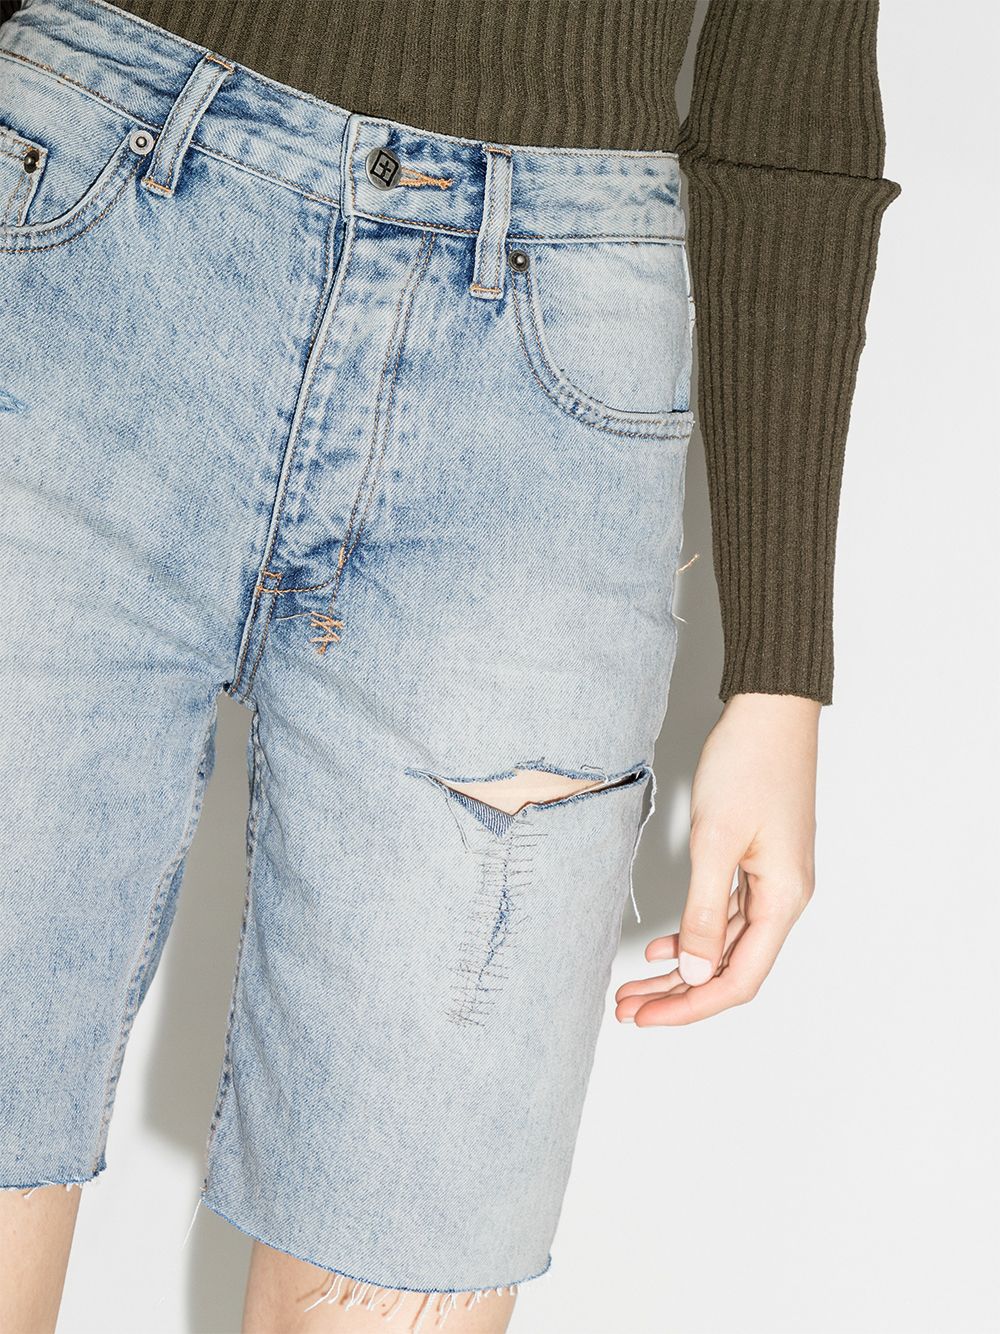 фото Ksubi джинсовые шорты brooklyn с прорезями